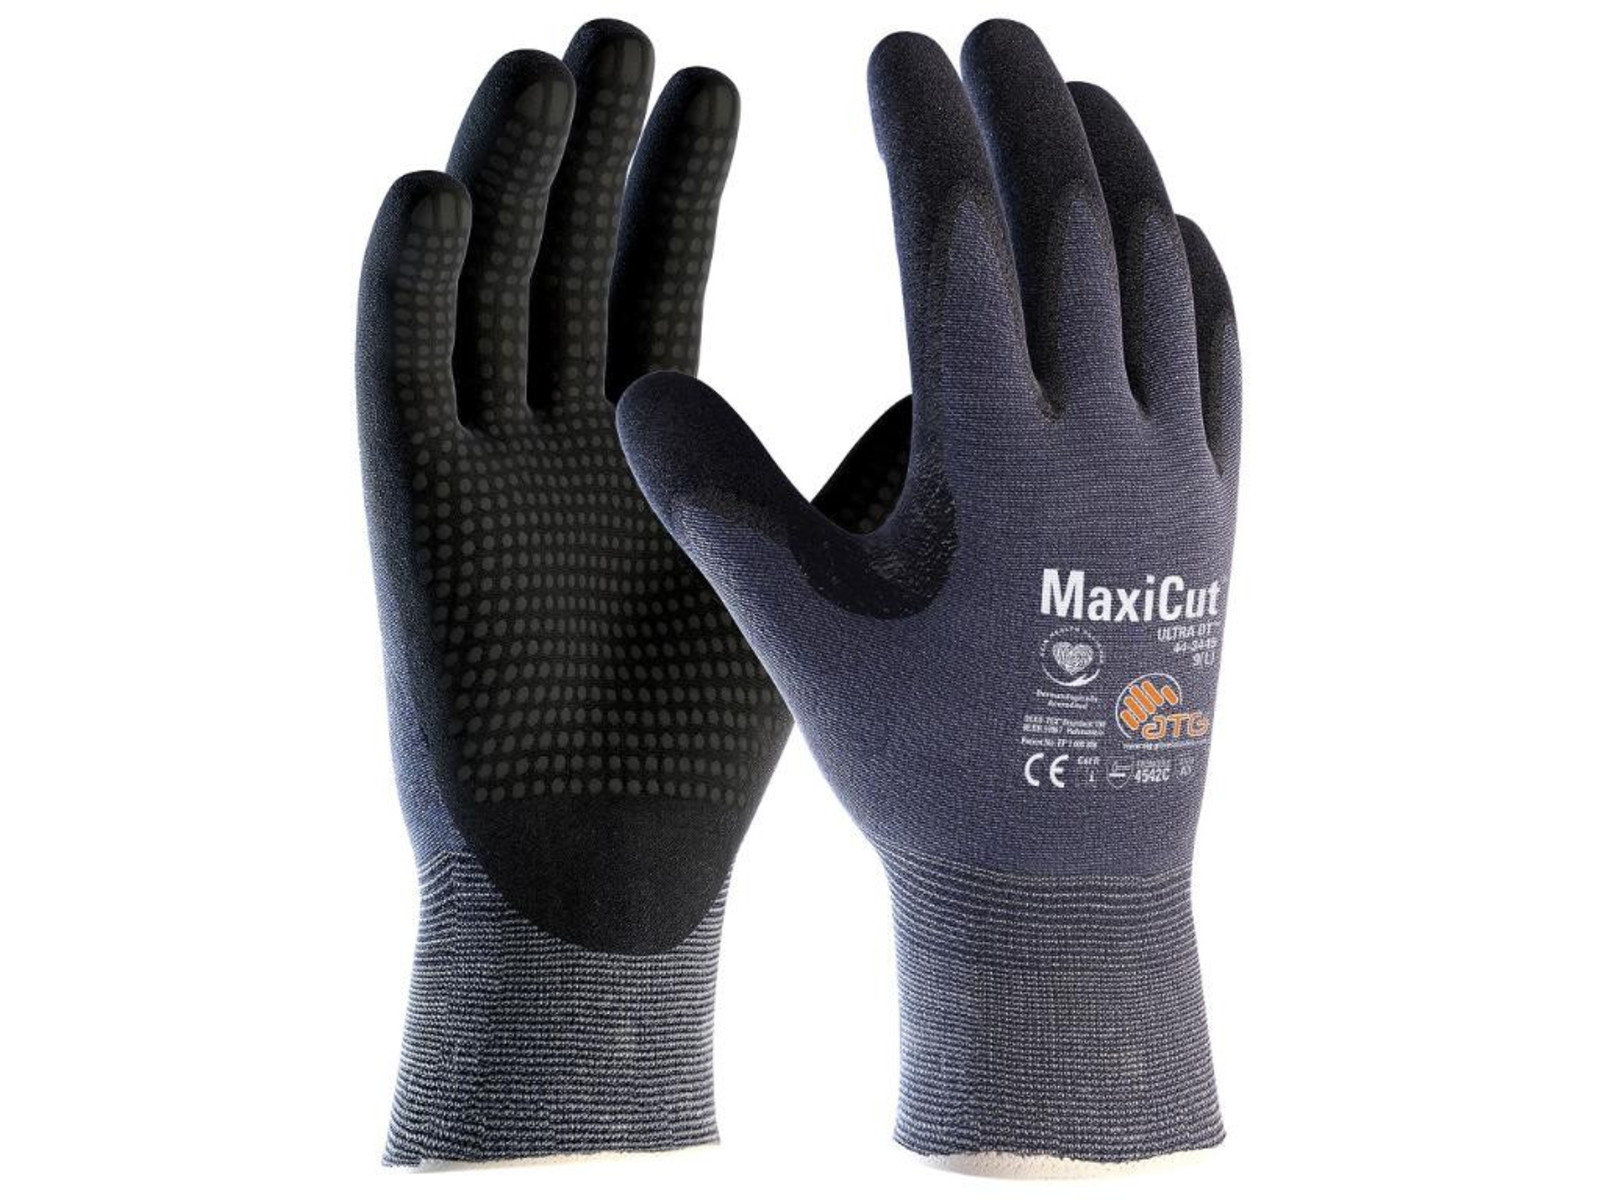 Protiporézne rukavice ATG MaxiCut Ultra 44-3445 - veľkosť: 8/M, farba: modrá